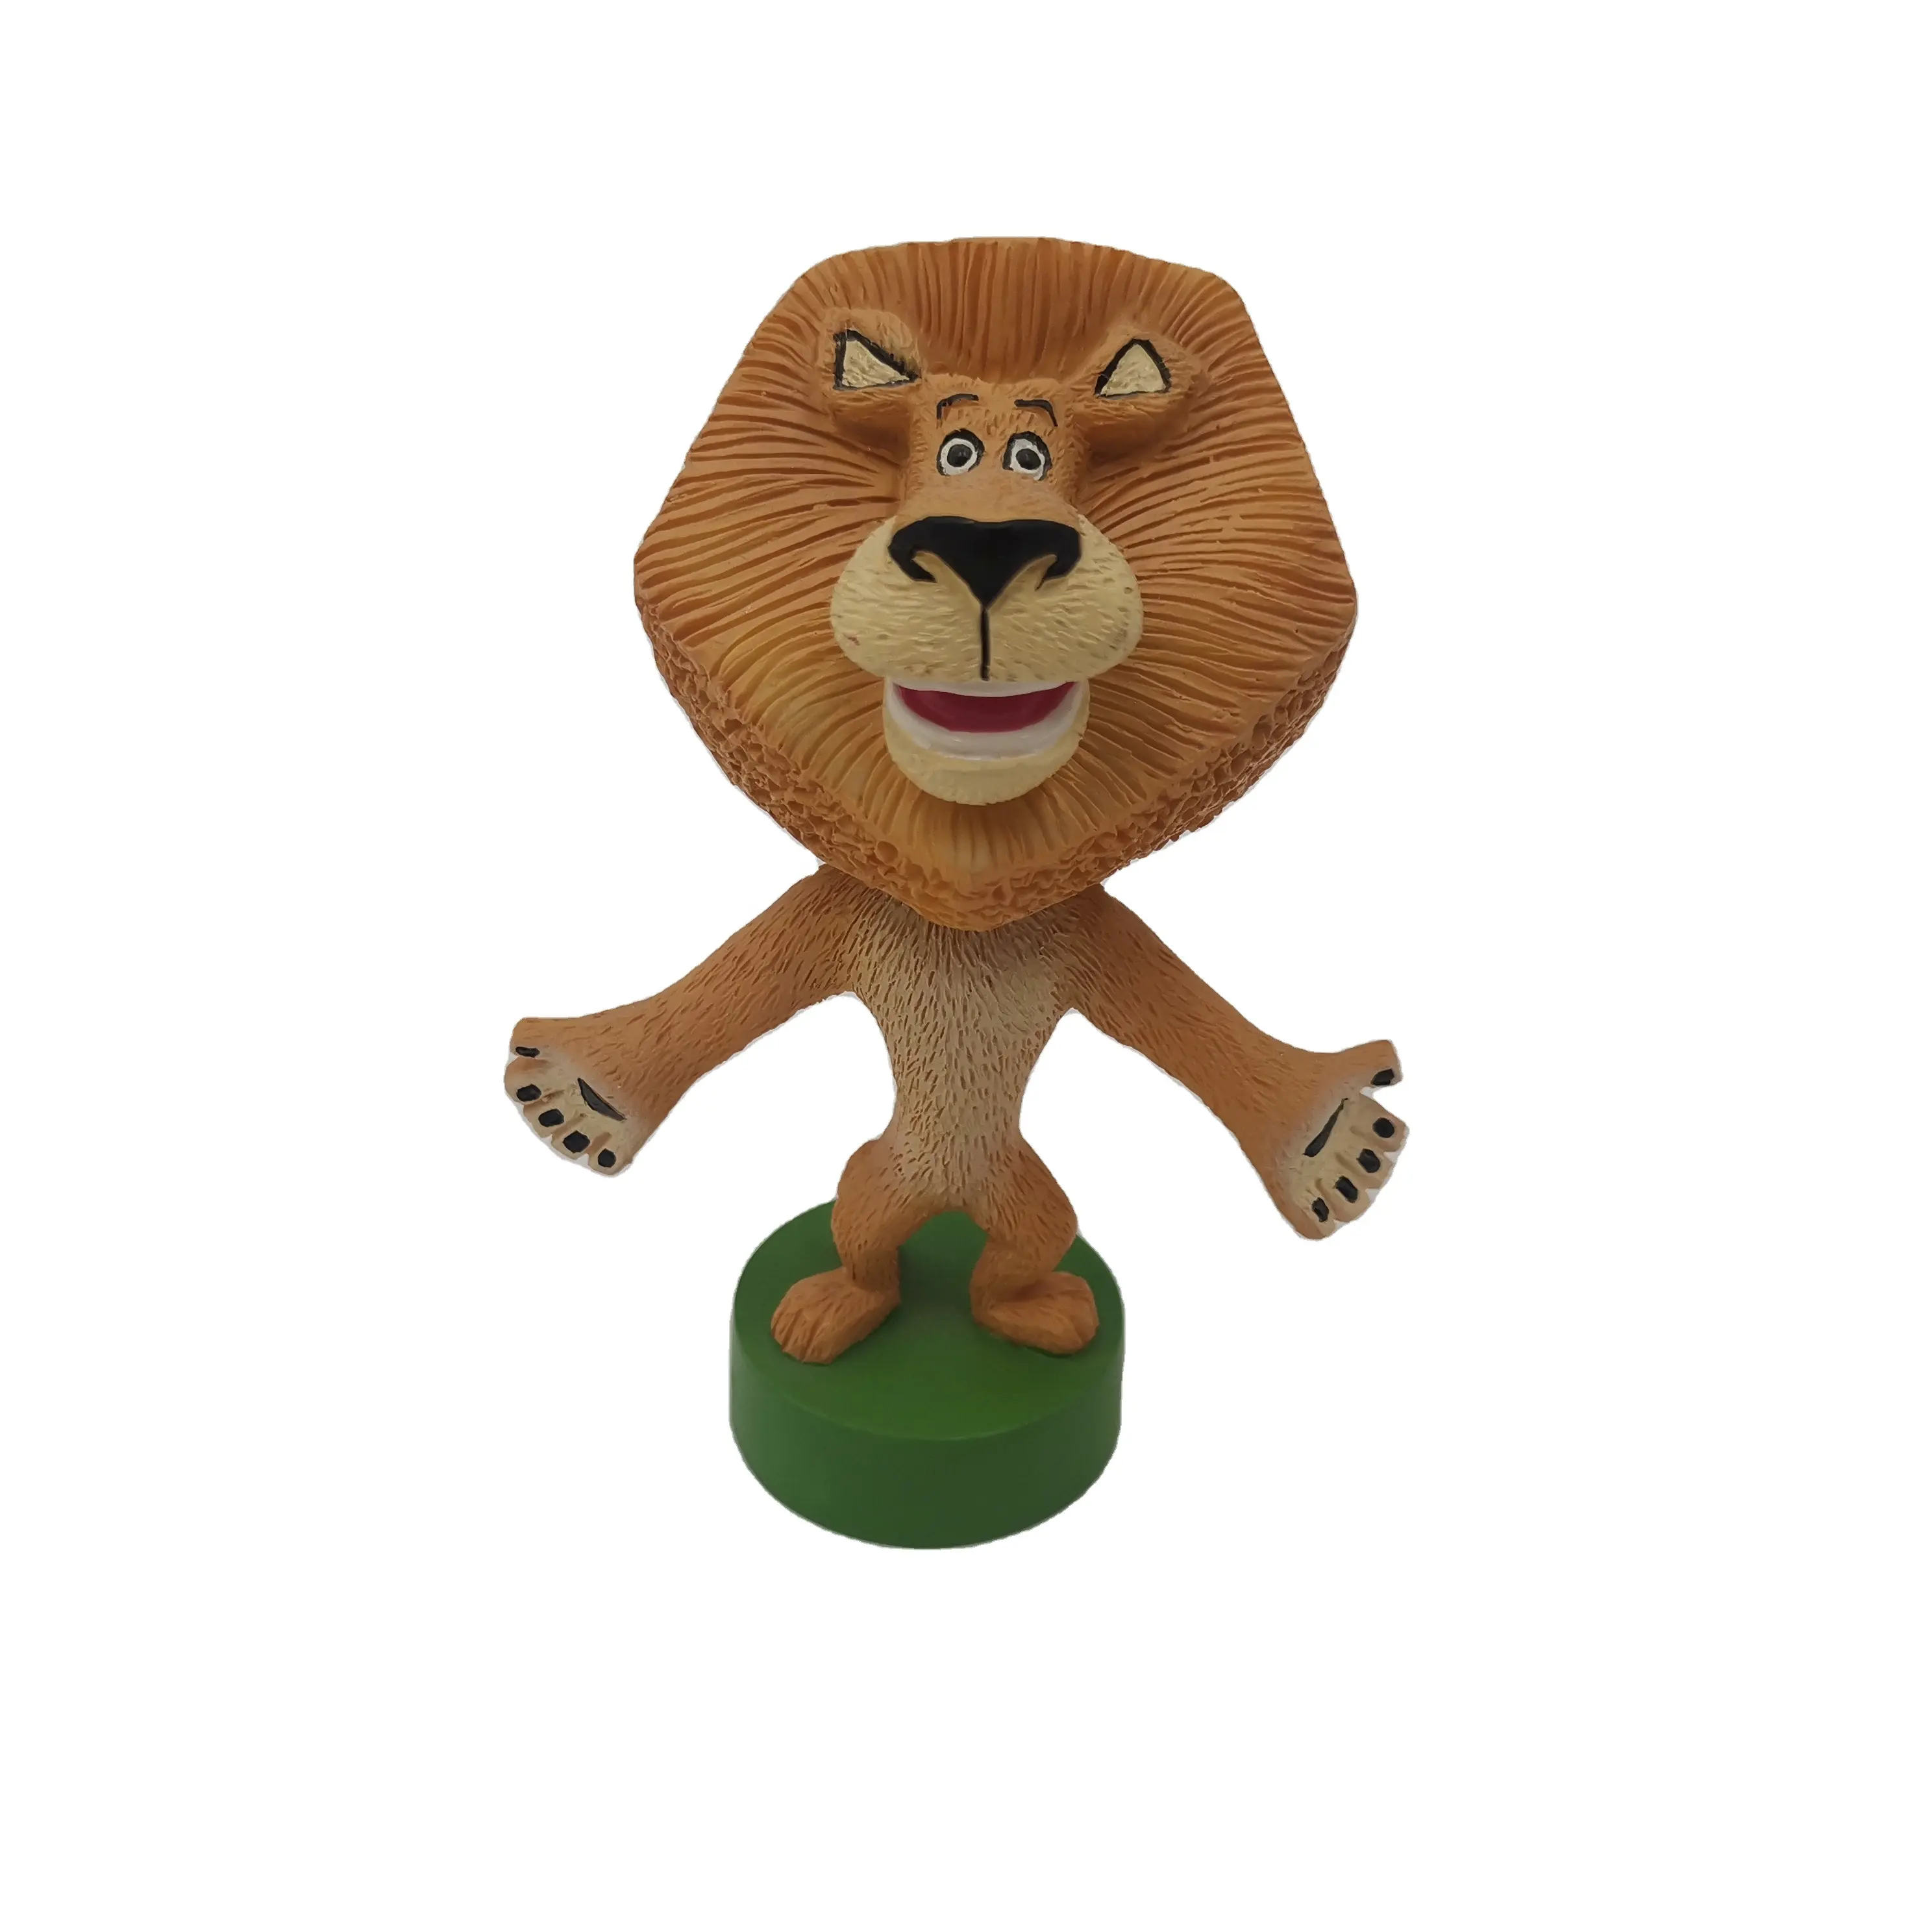 Promozione Su Misura di Alta Qualità 3d Bobblehead Figurine, animale di Sport stella e il carattere ritratto di personalizzazione Bobble Testa di Bambola